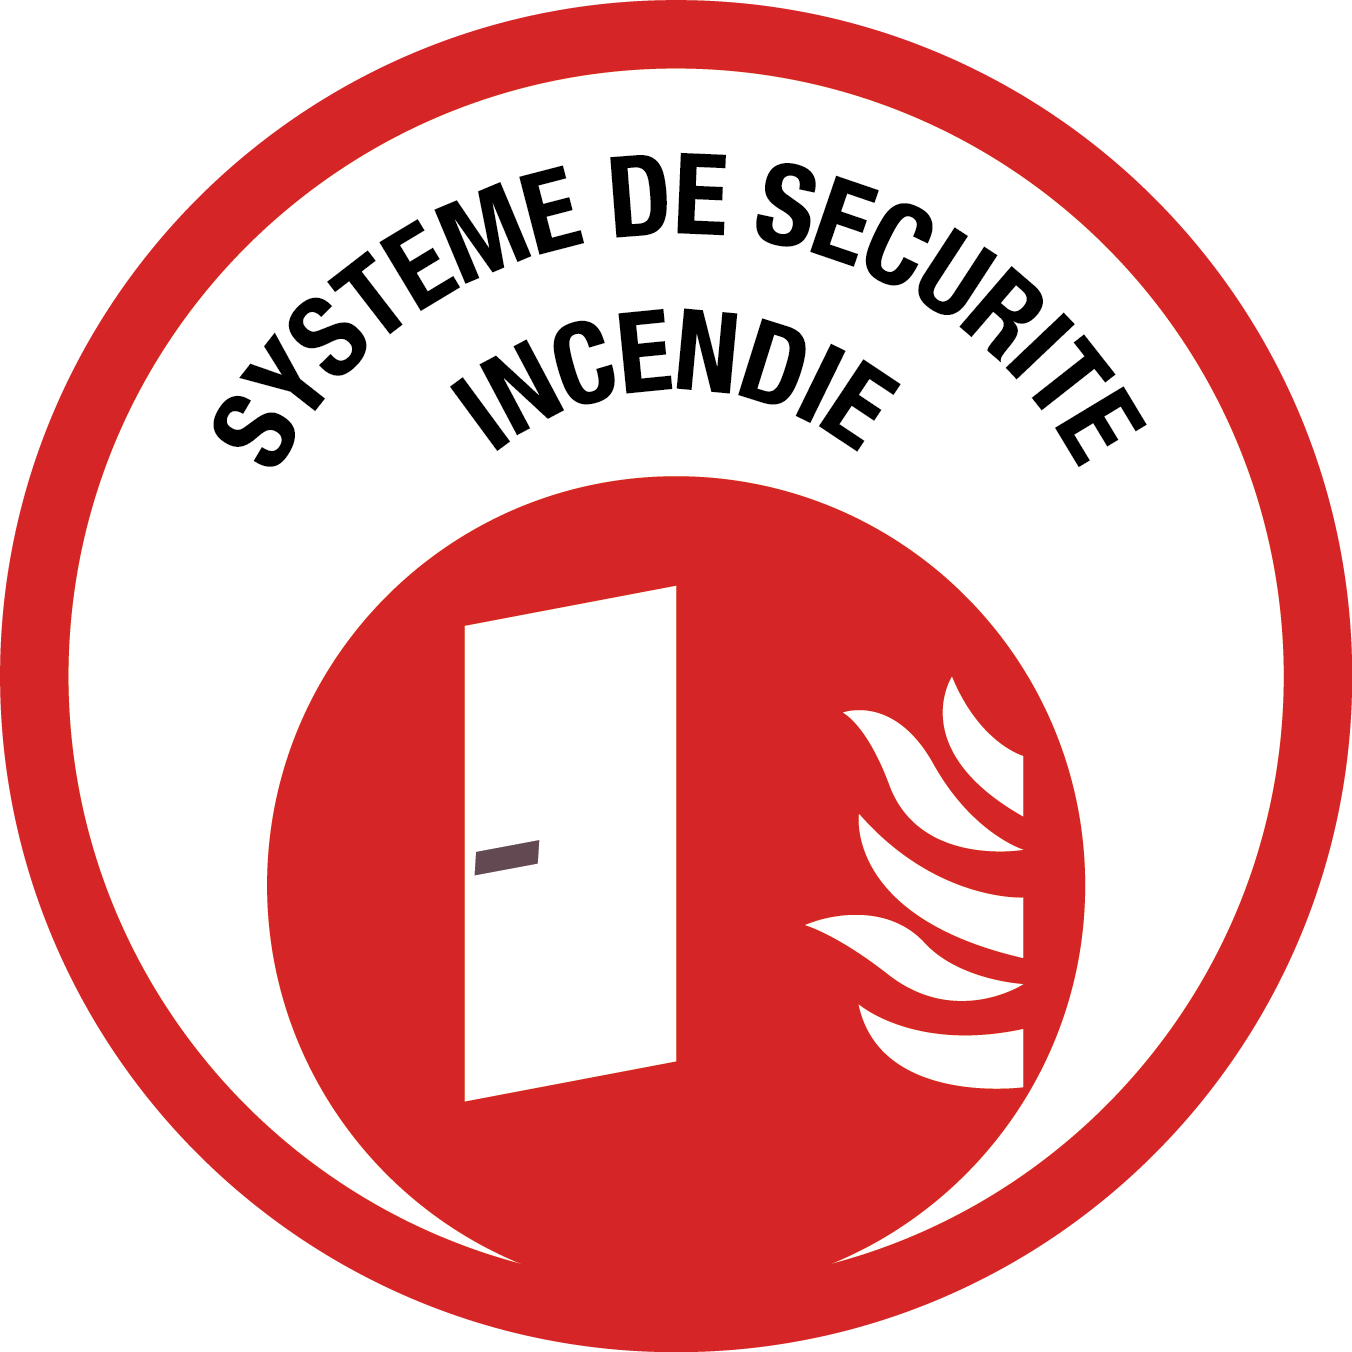 Picto pour formation sur les système de sécurite incendie (SSI)